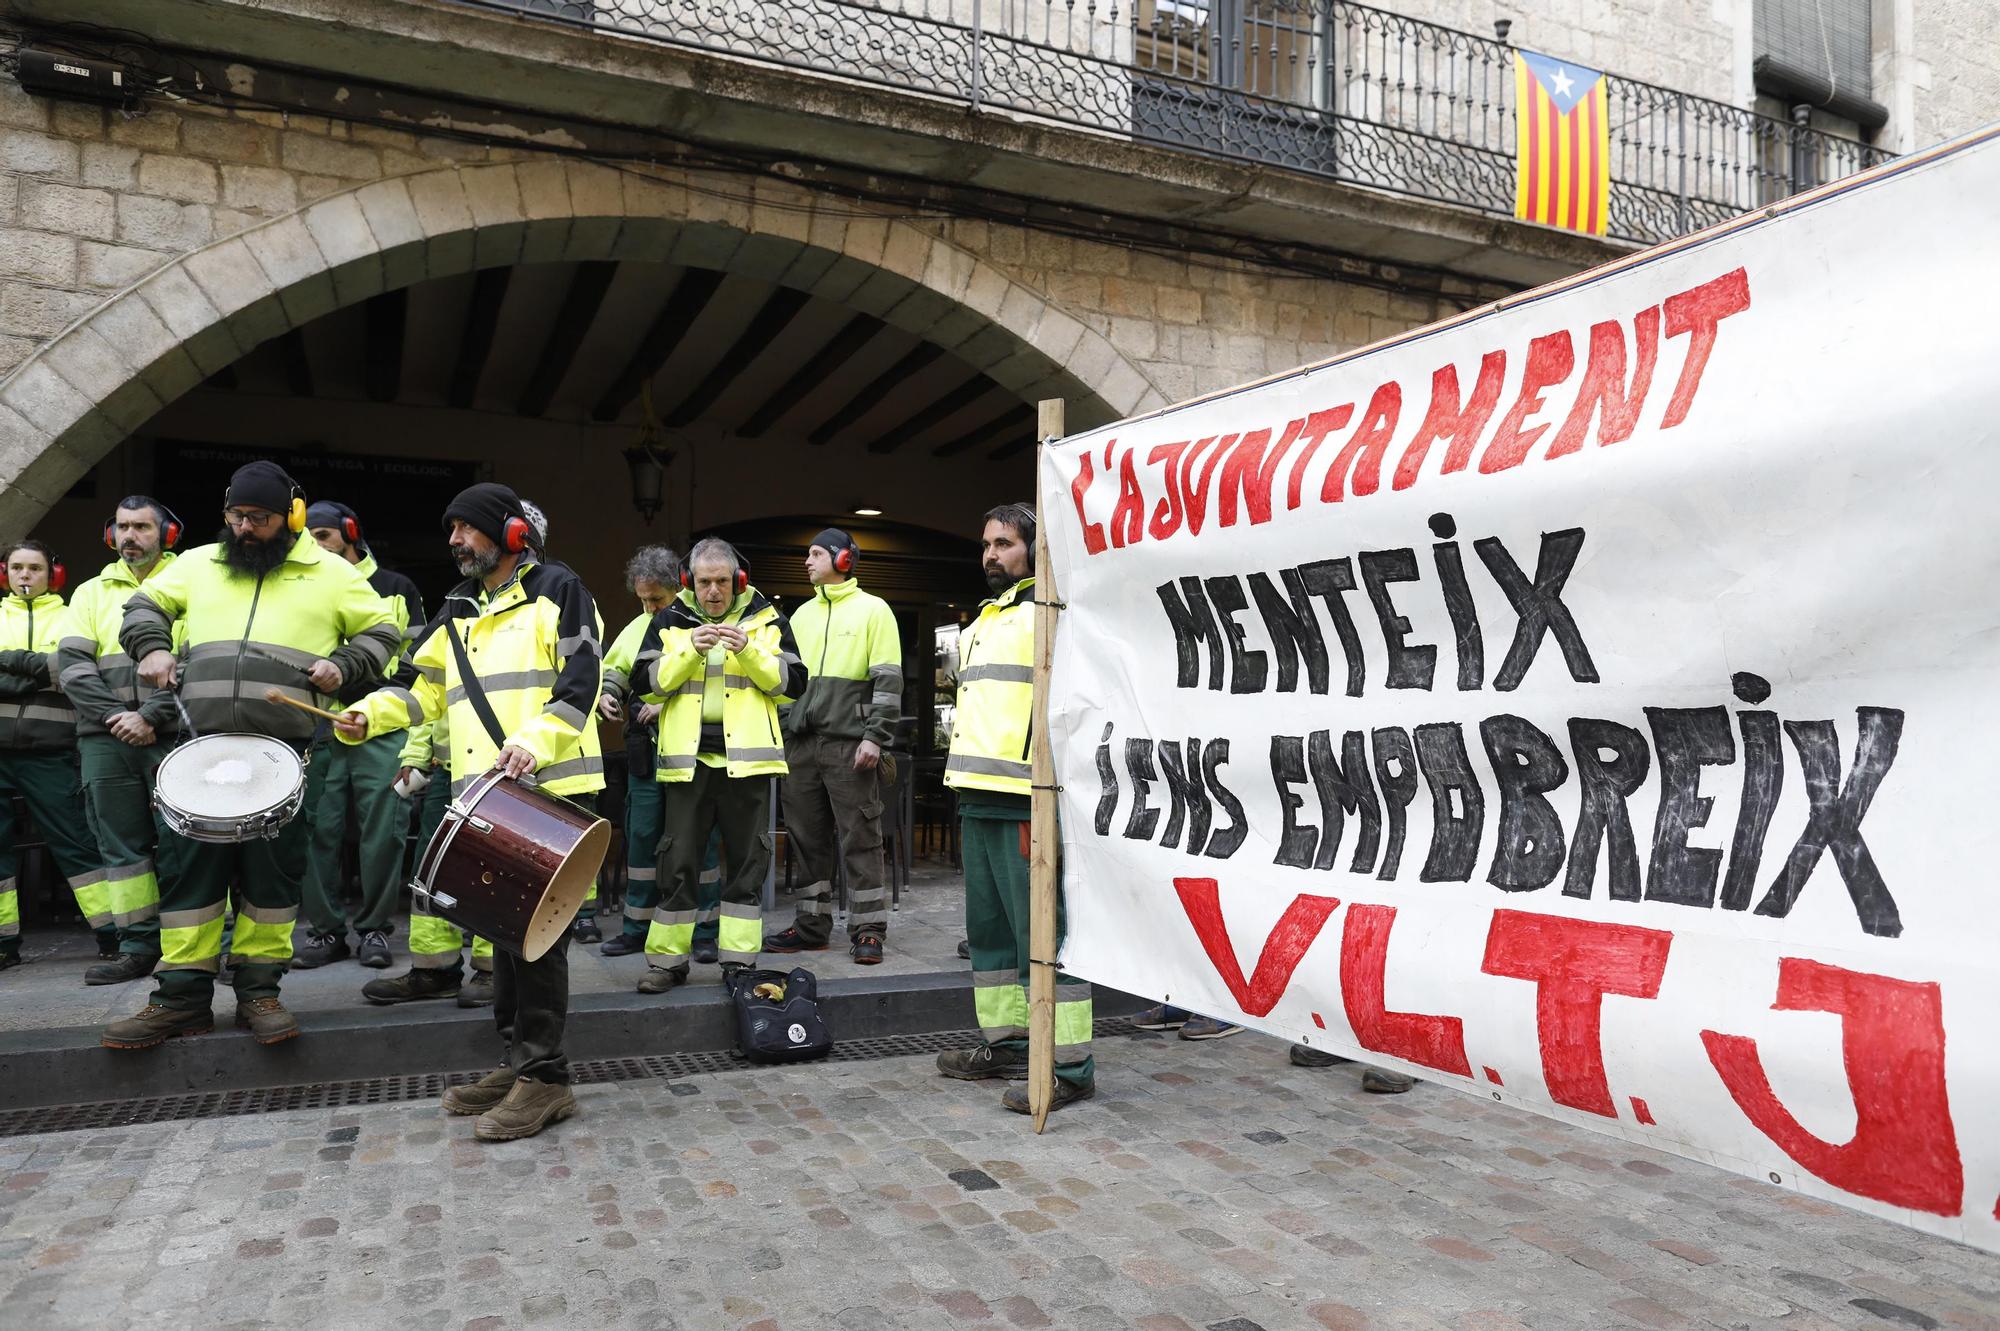 "Madrenas, caga les peles": Treballadors porten un tió a l'Ajuntament de Girona per reclamar els augments acordats